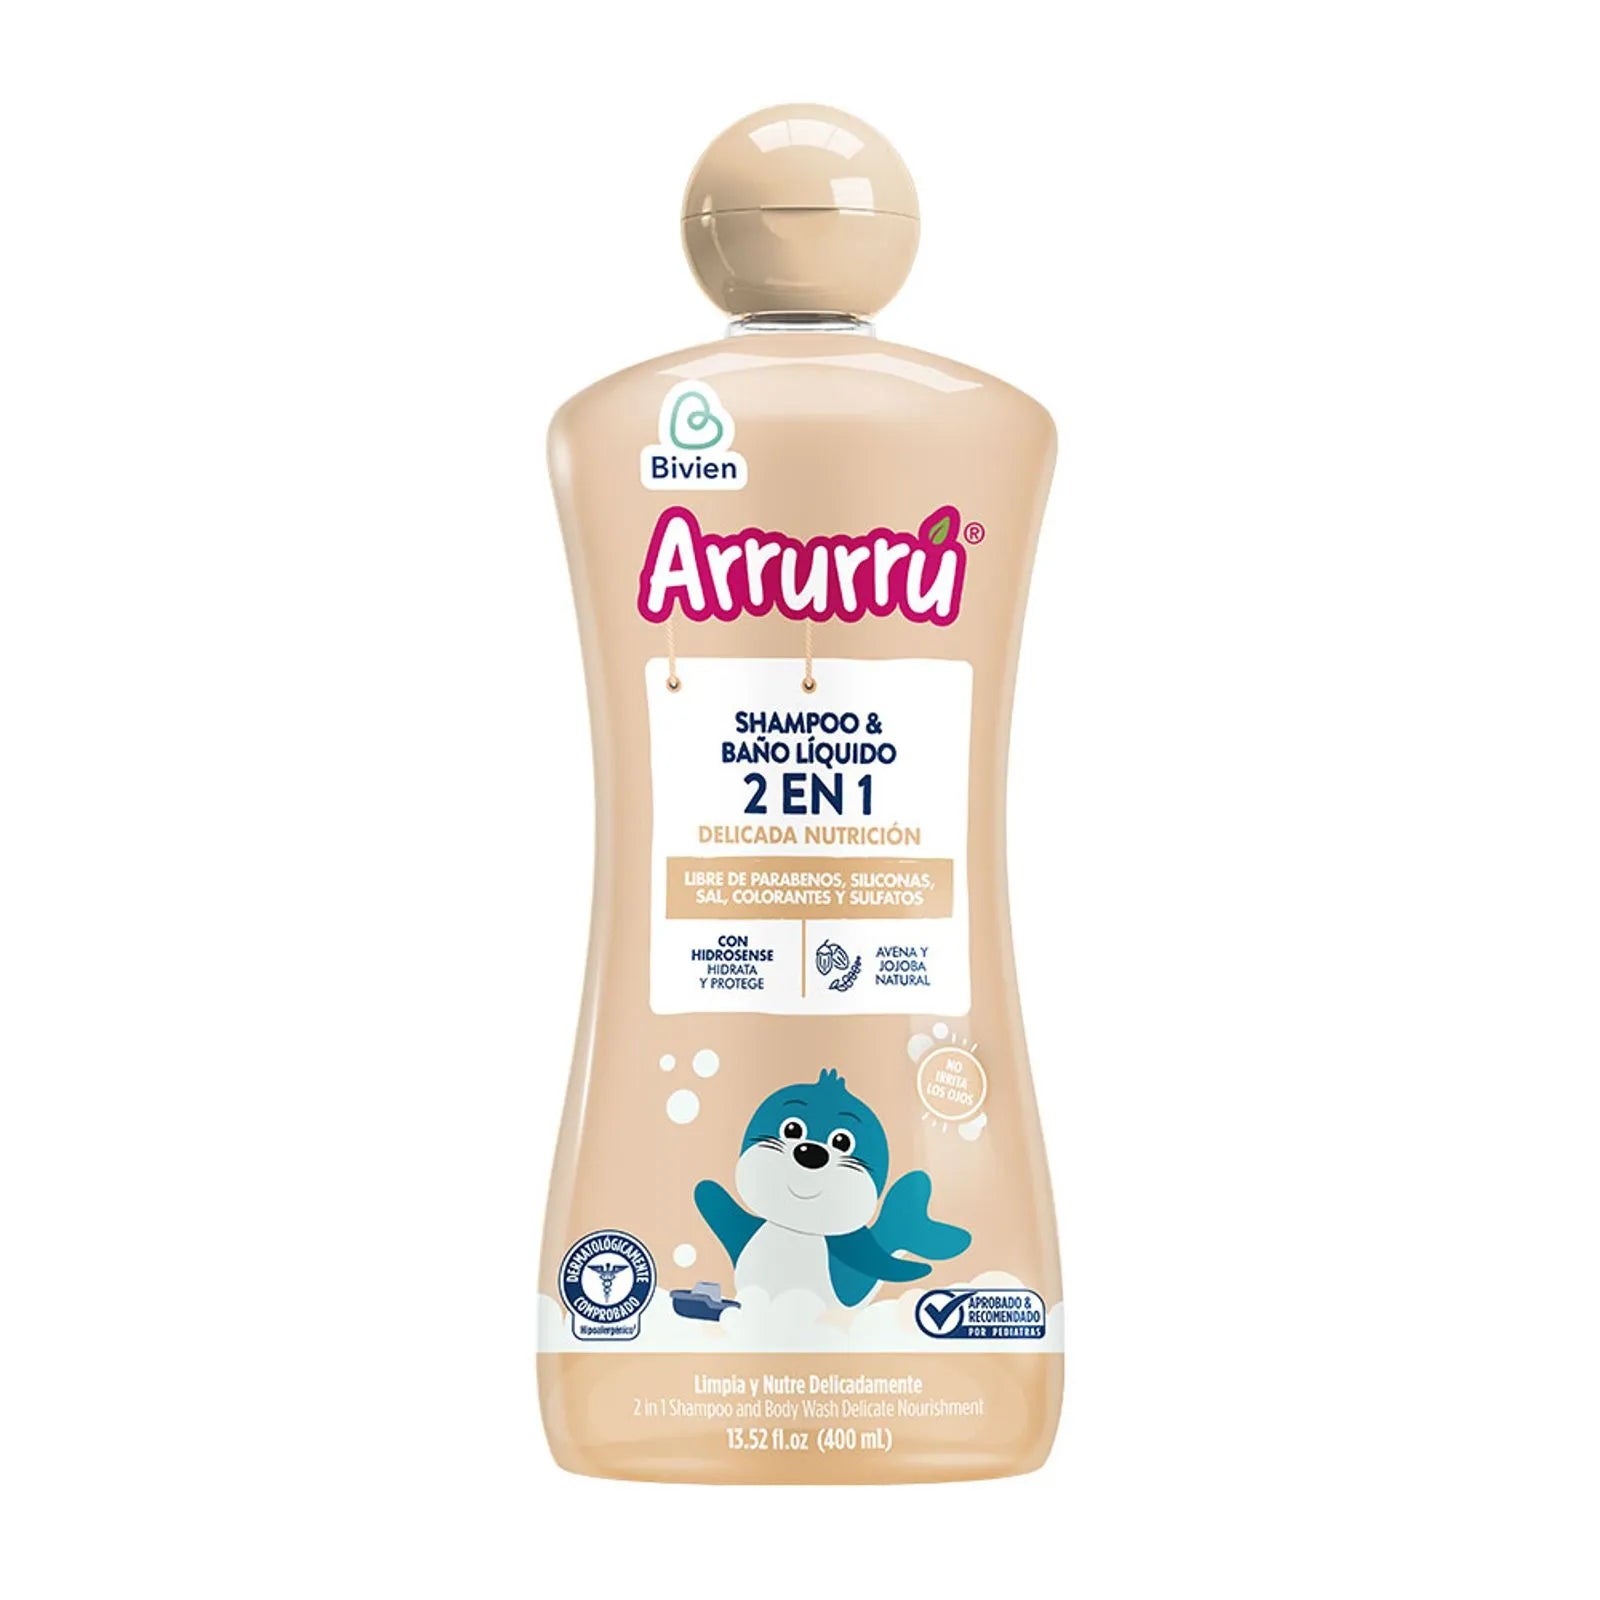 Shampoo y baño liquido 2 en 1 Arrurru Avena x 400 ml